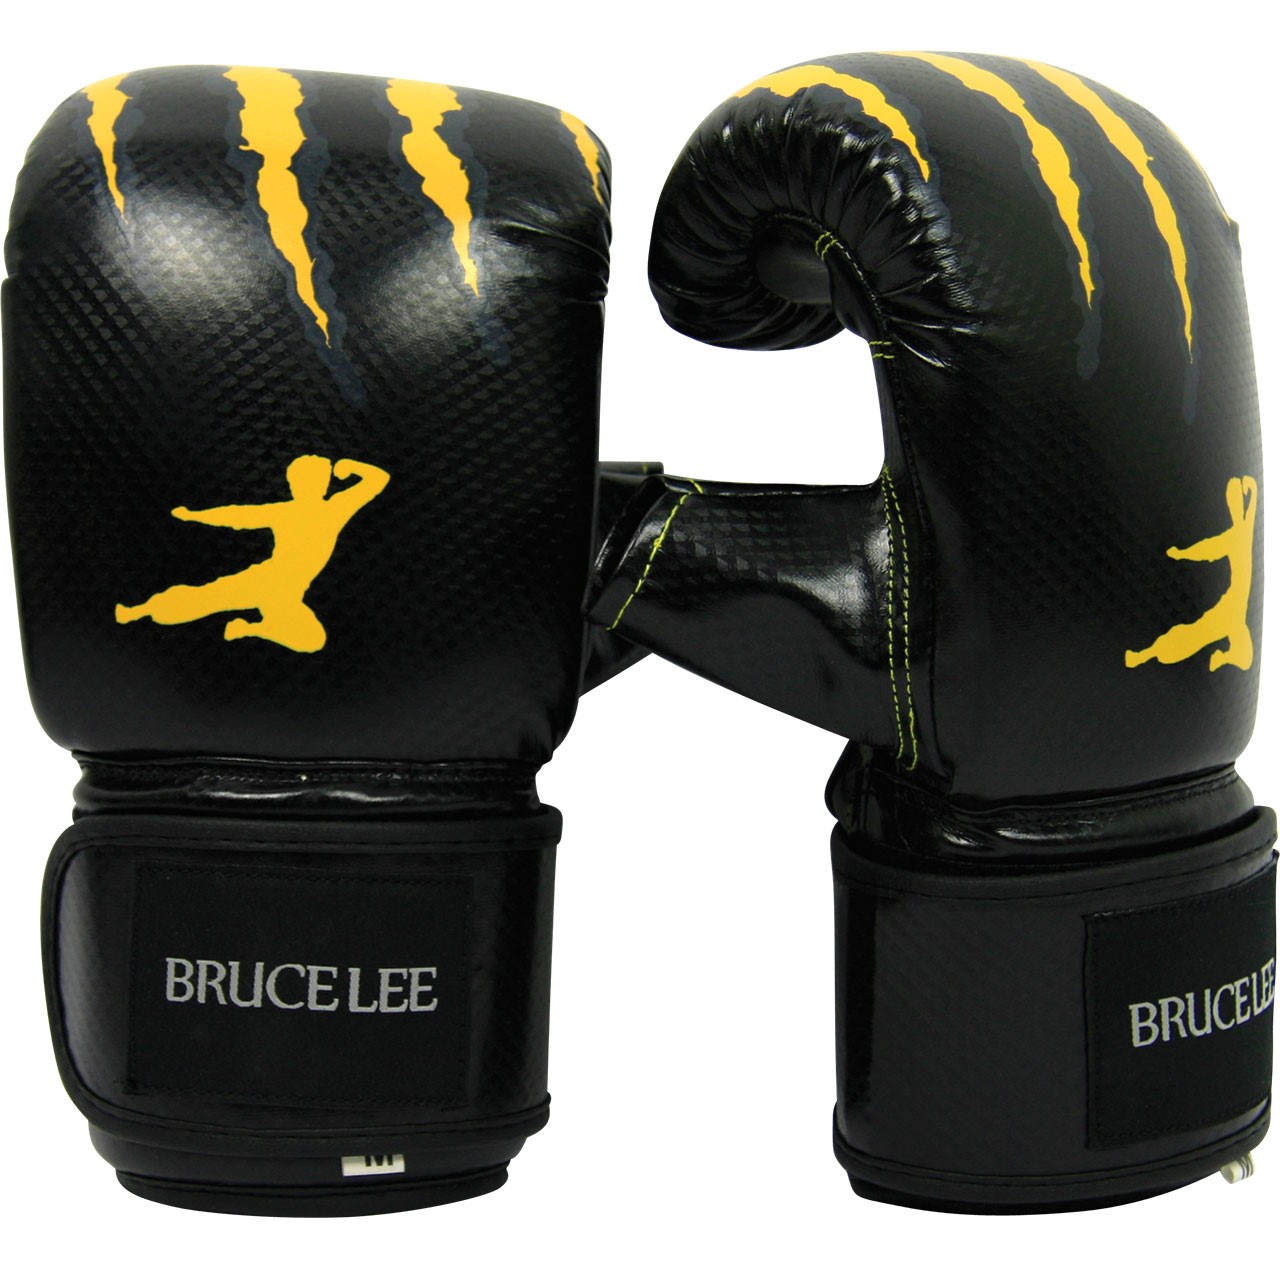 Boxerské rukavice na pytel nebo sparring XL BRUCE LEE